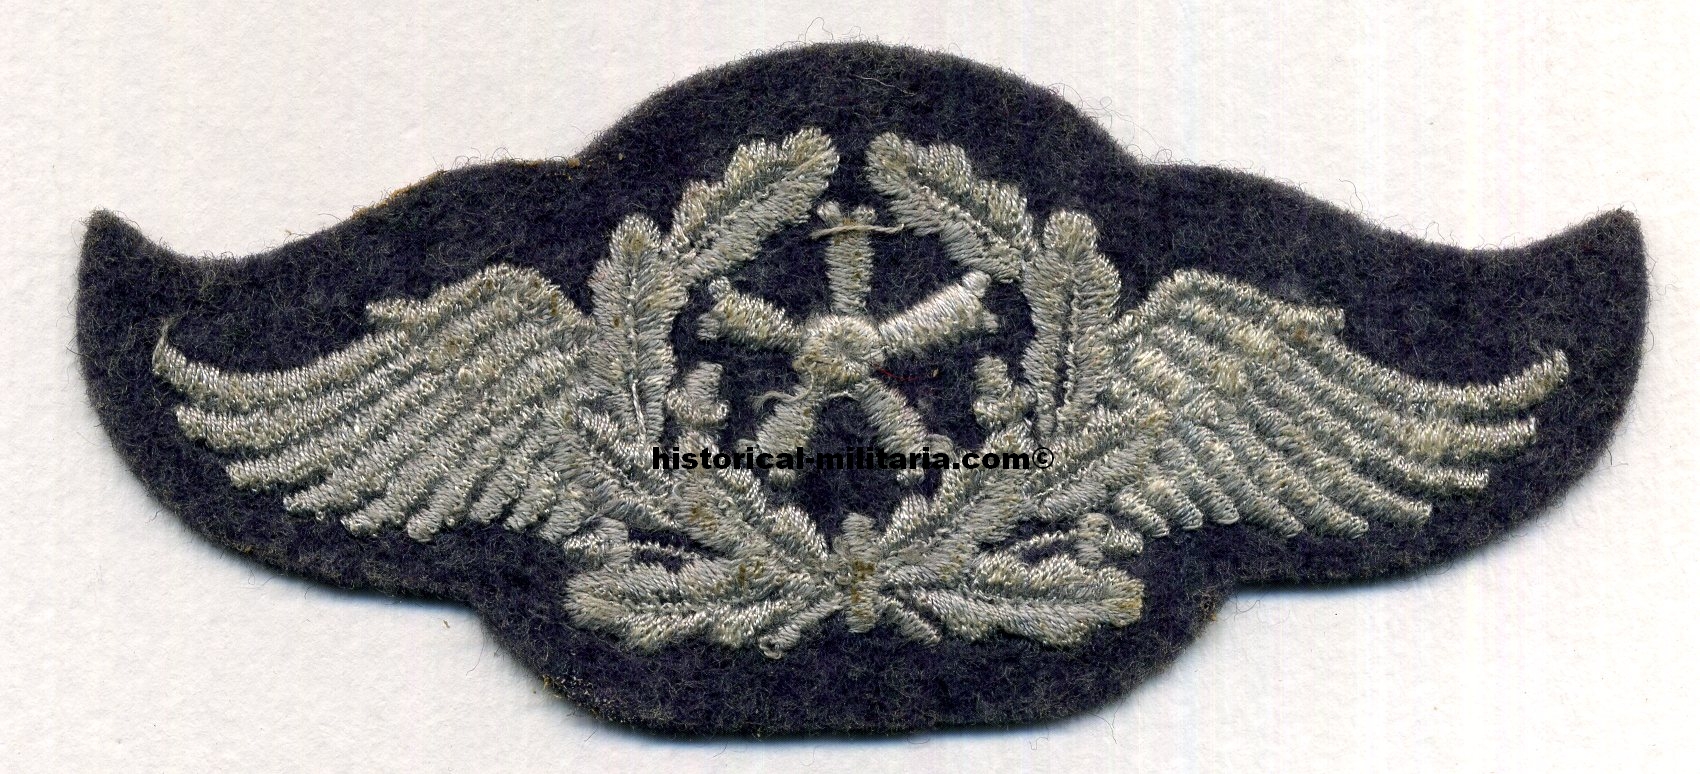 ORIGINAL Luftwaffe Tätigkeitsabzeichen Fliegertechnisches Personal graublau - Original Lufwaffe Flight Technical Personnel&#39;s Trade Badge on greyblue backing - Distintivo di Specialità Luftwaffe